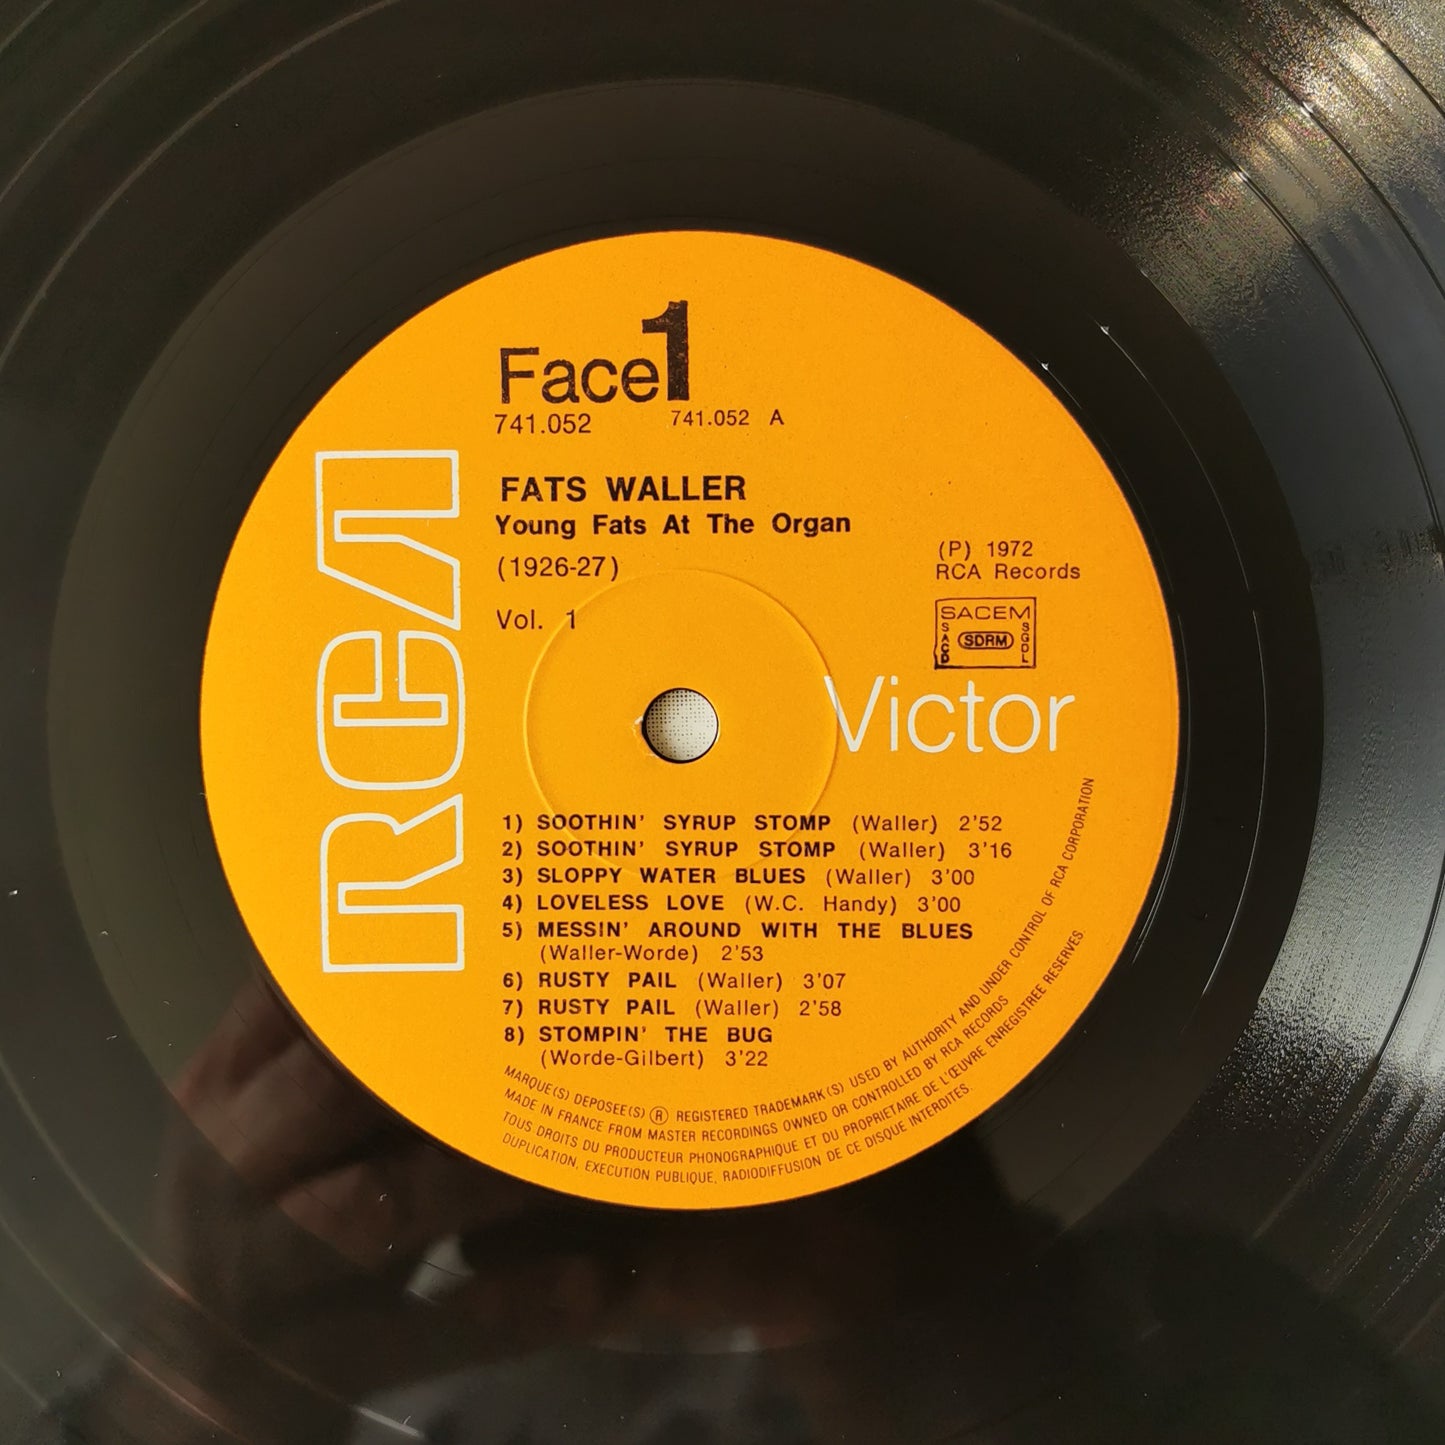 FATS WALLER - Young Fats At The Organ - 1926-1927 - Volume 1